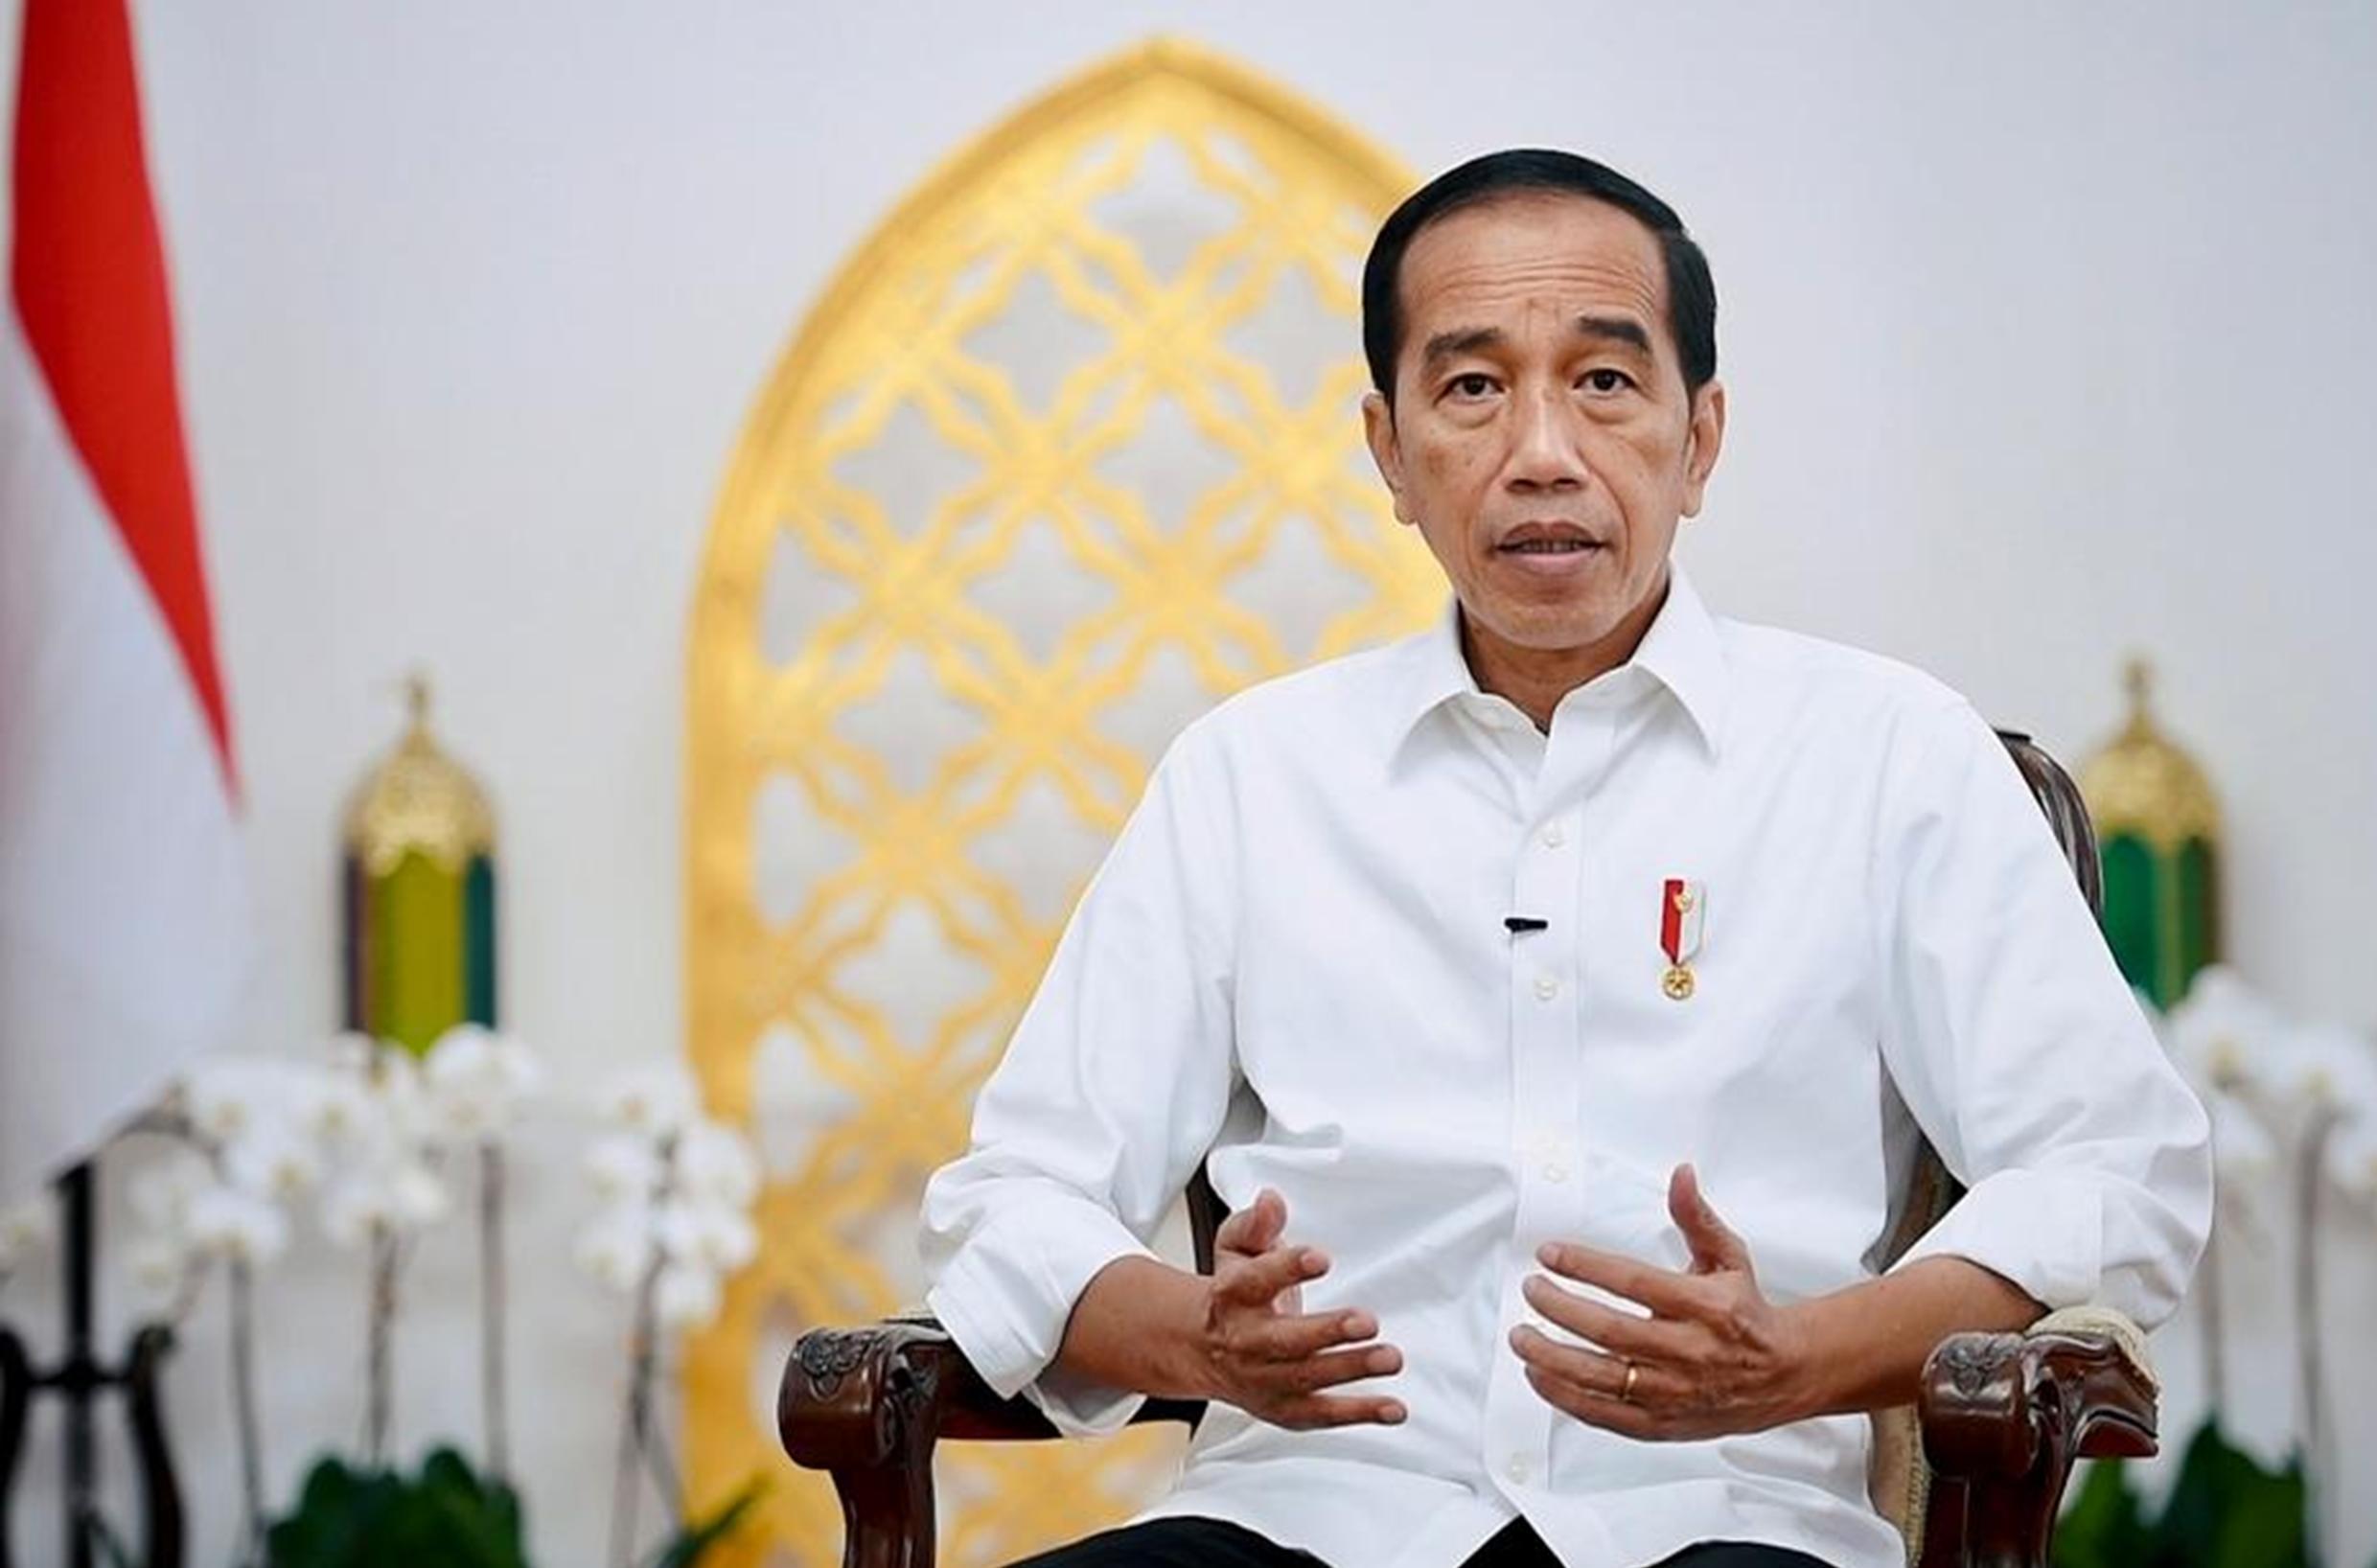 Resmi, Masa Jabatan Kades Bisa Sampai 16 Tahun dalam Aturan Baru yang Diteken Presiden Jokowi